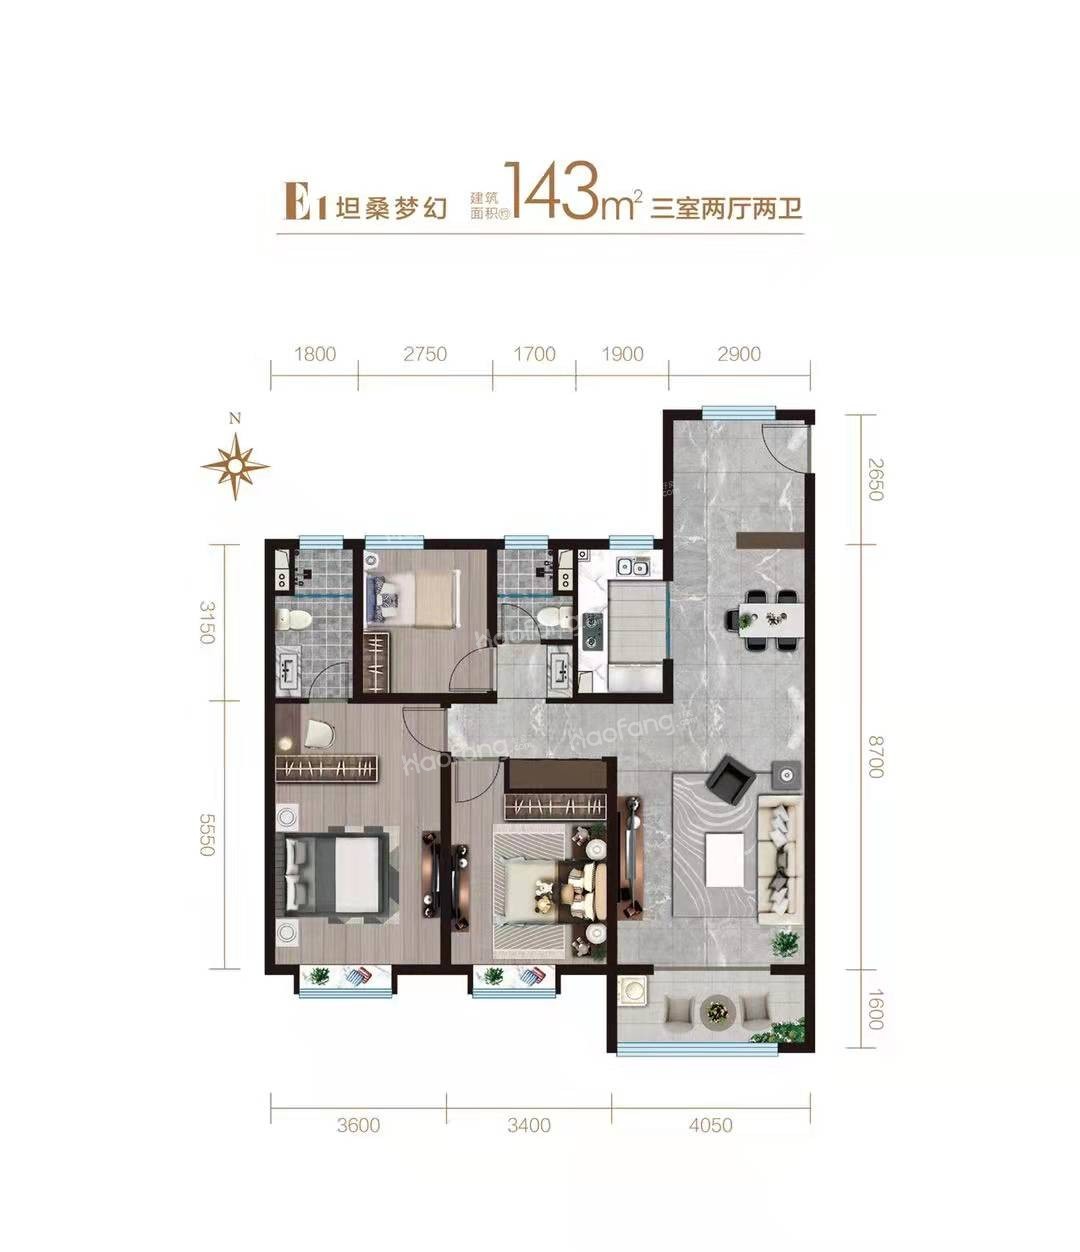 E1户型143㎡三室两厅两卫